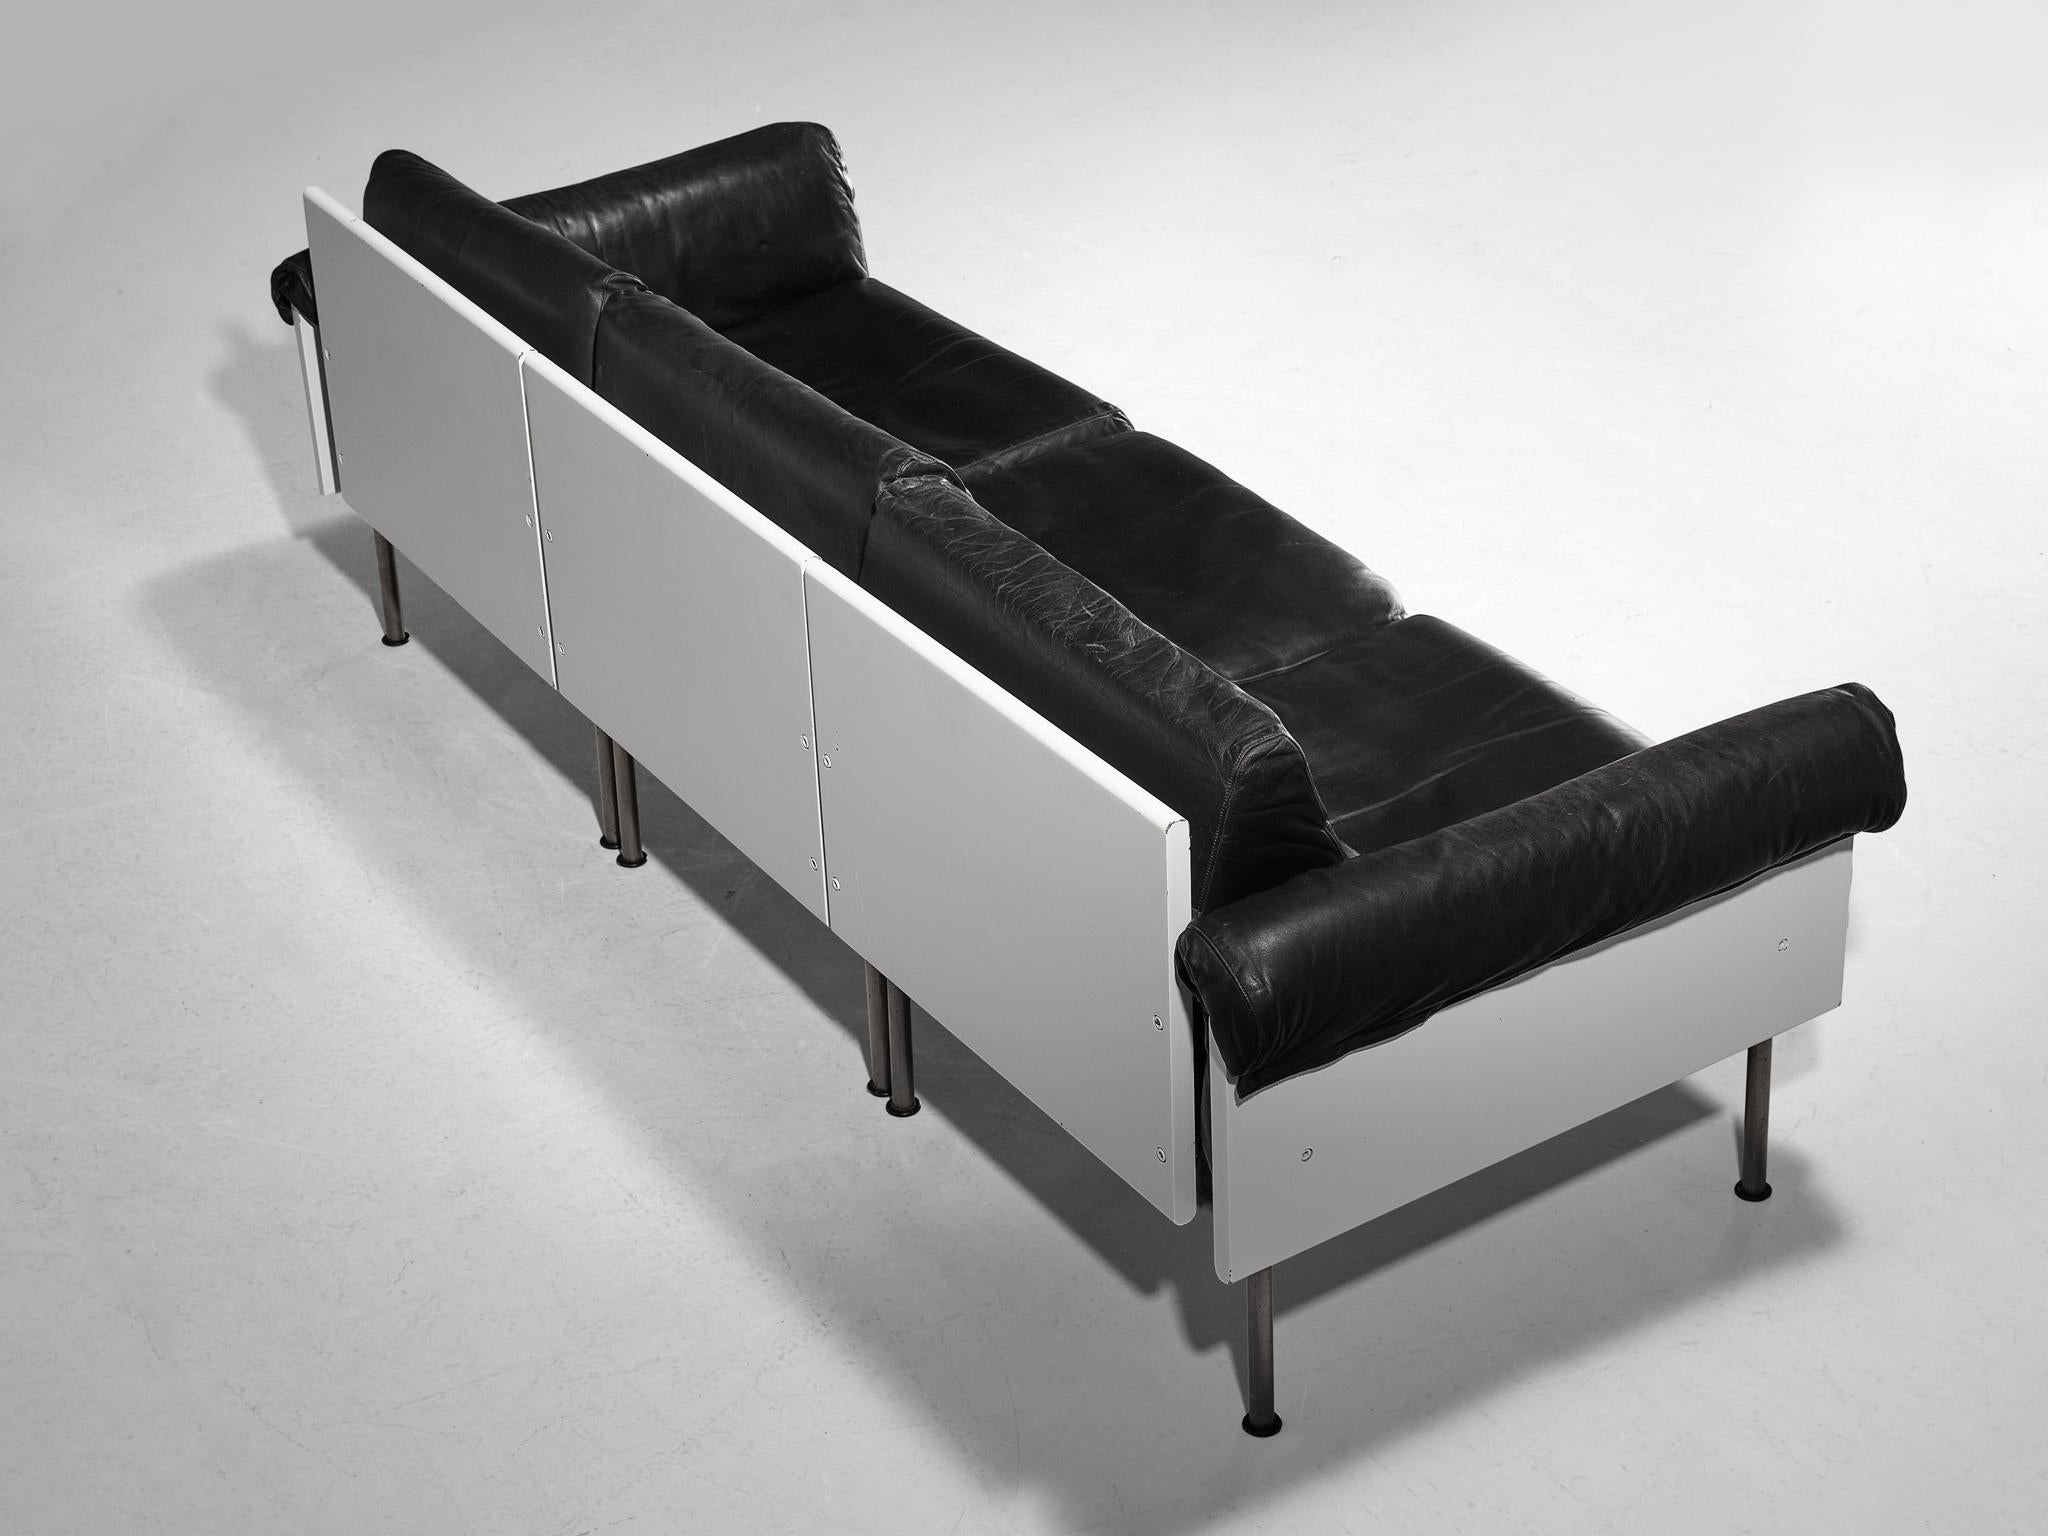 Yrjö Kukkapuro für Haimi Finland, modulares Sofa, Leder, Metall, Holz, Finnland, 1963

Dieses stromlinienförmige Sektionssofa zeichnet sich durch eine schlichte, natürliche und modernistische Ästhetik aus. Das Design zeichnet sich durch eine solide